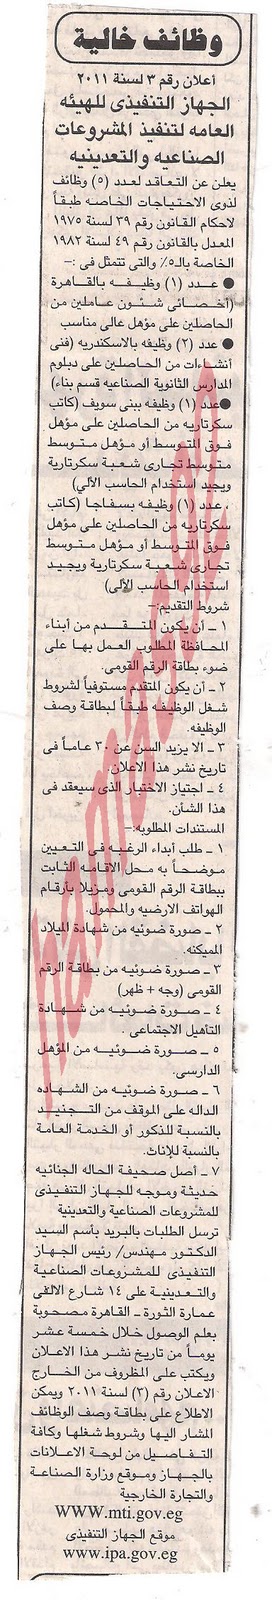 وظائف جميع الصحف والجرائد والمجلات المصريه الخميس 6 \10\2011 Picture+002